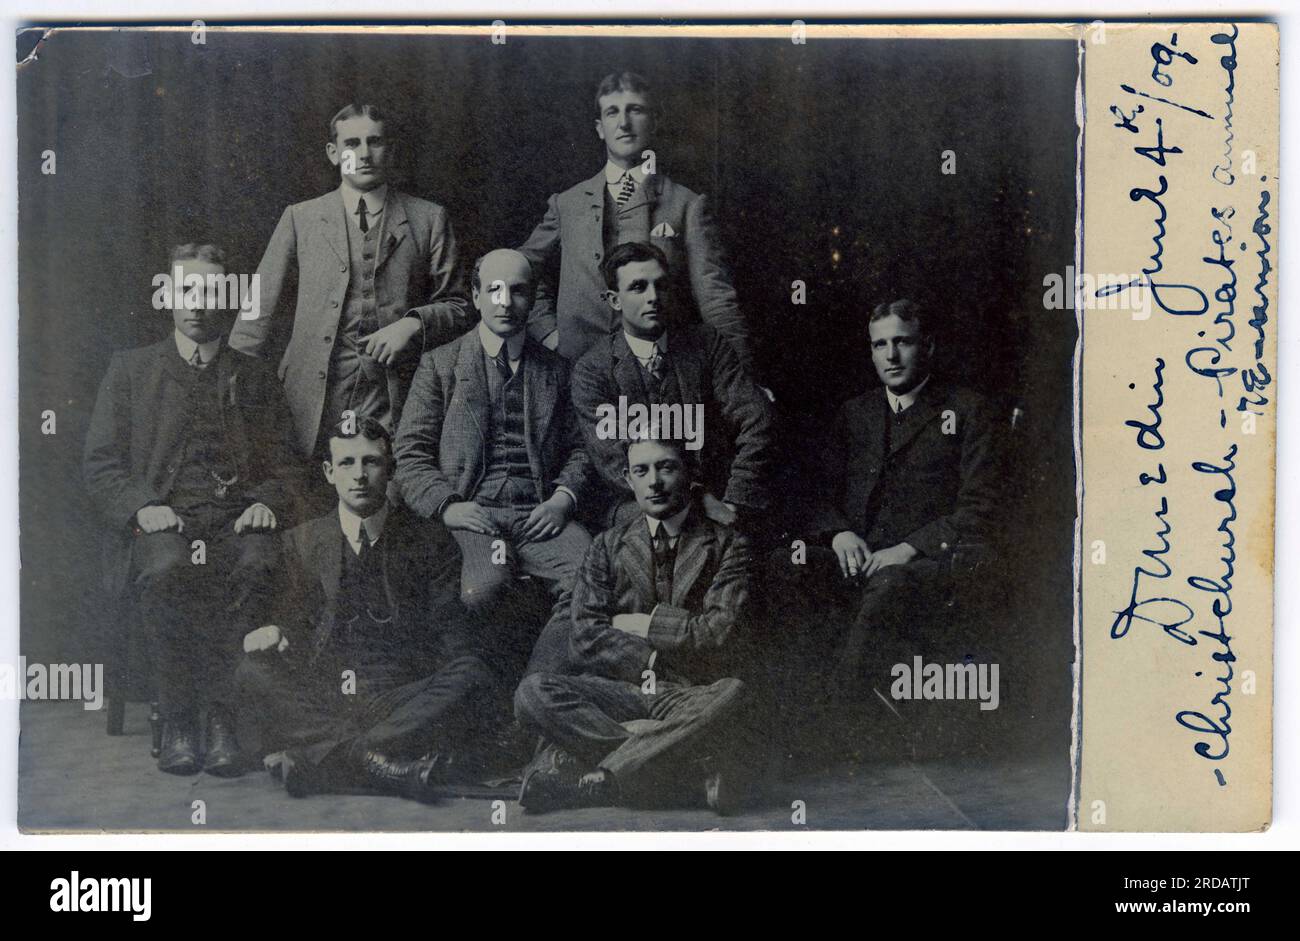 Photographie d'un groupe d'hommes lors d'une réunion de la distribution de Pirates de Penzance jouée à Dunedin, Nouvelle-Zélande, vers 1909 Banque D'Images